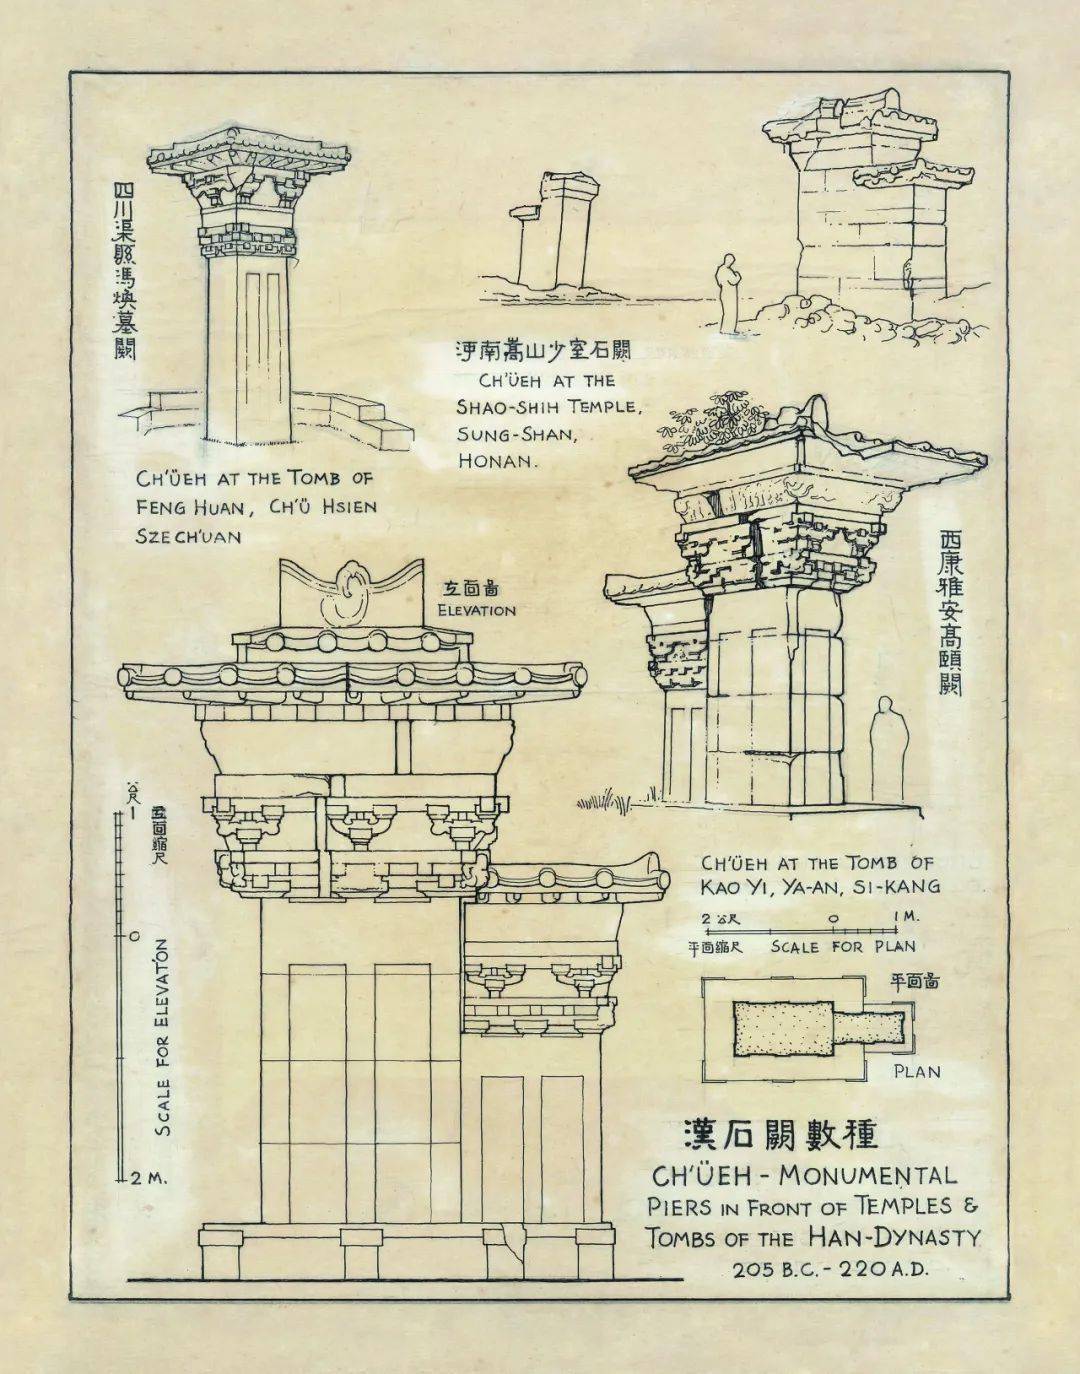 梁思成与林徽因夫妇是中国古建筑史研究的奠基人之一,他们一起创办了